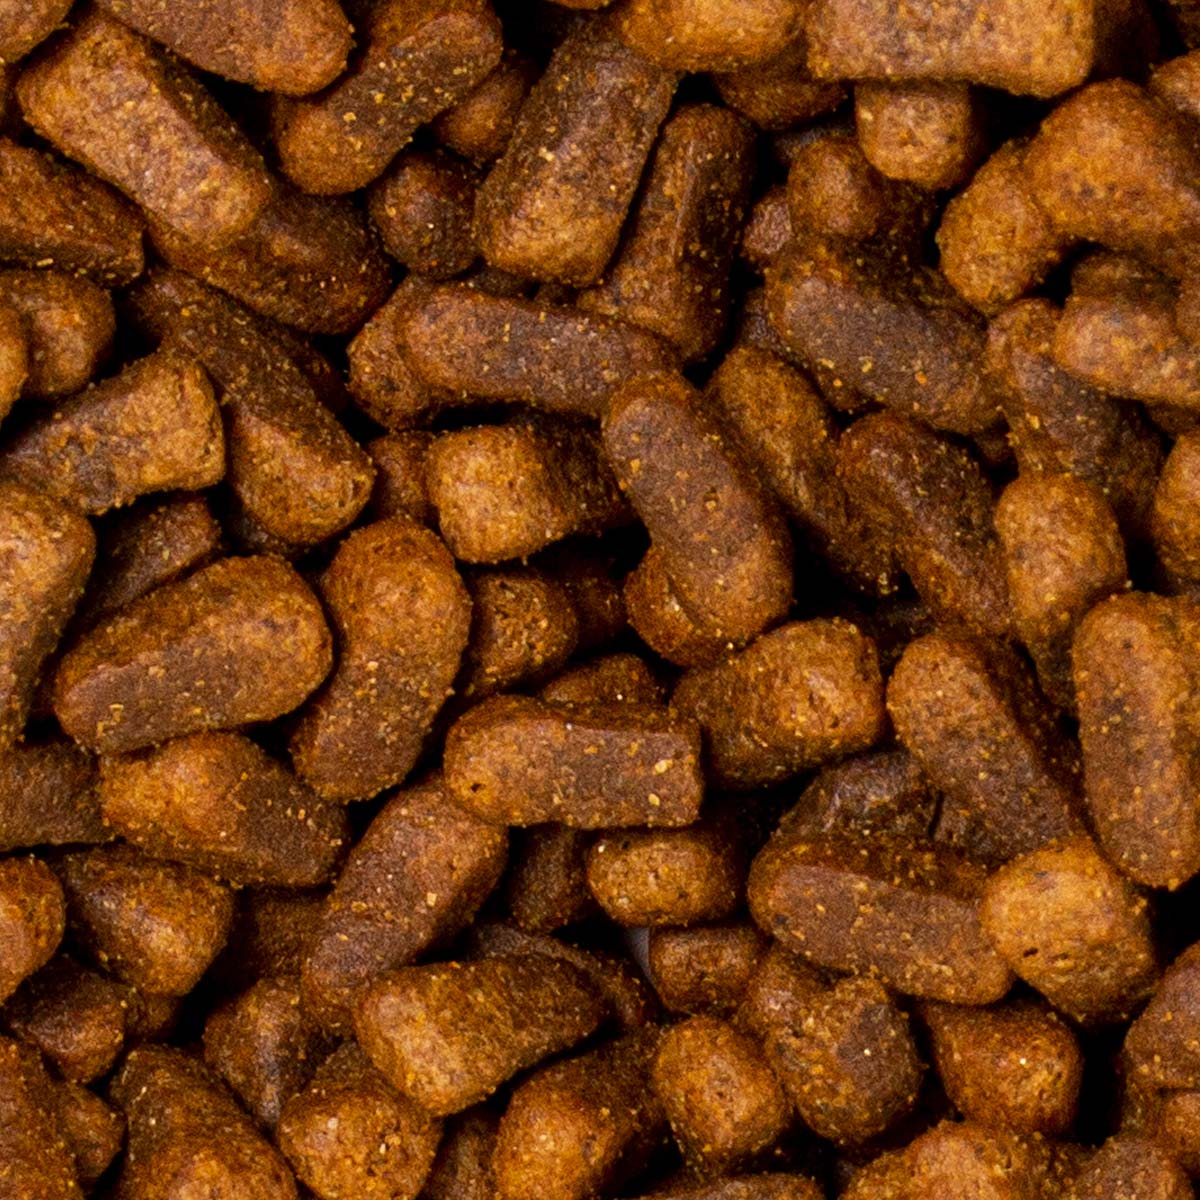 Deuka Dog food Sensikost grain free 5 kg